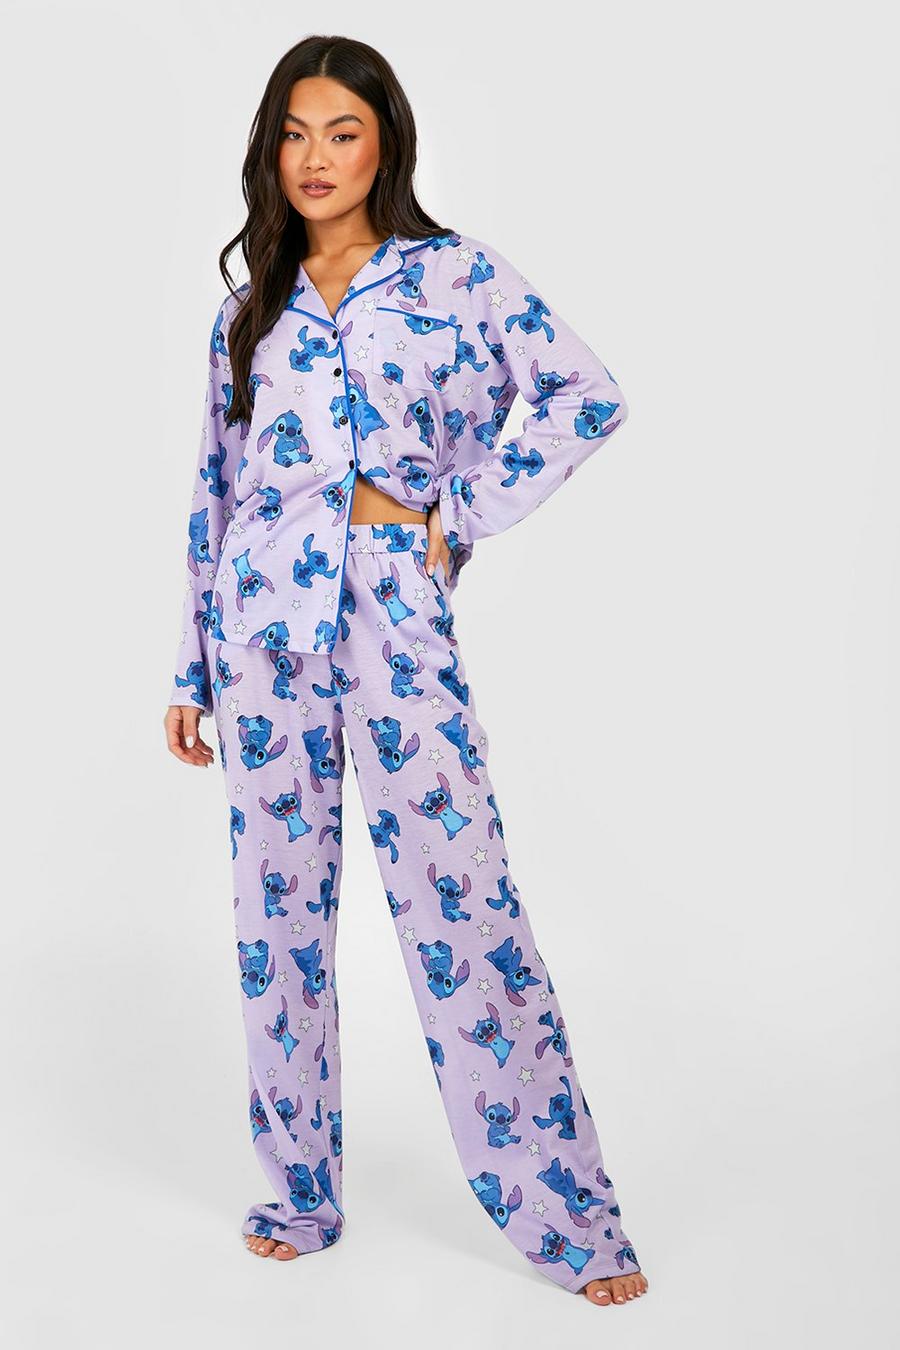 Ensemble de pyjama Disney à imprimé Lilo & Stitch, Lilac violett